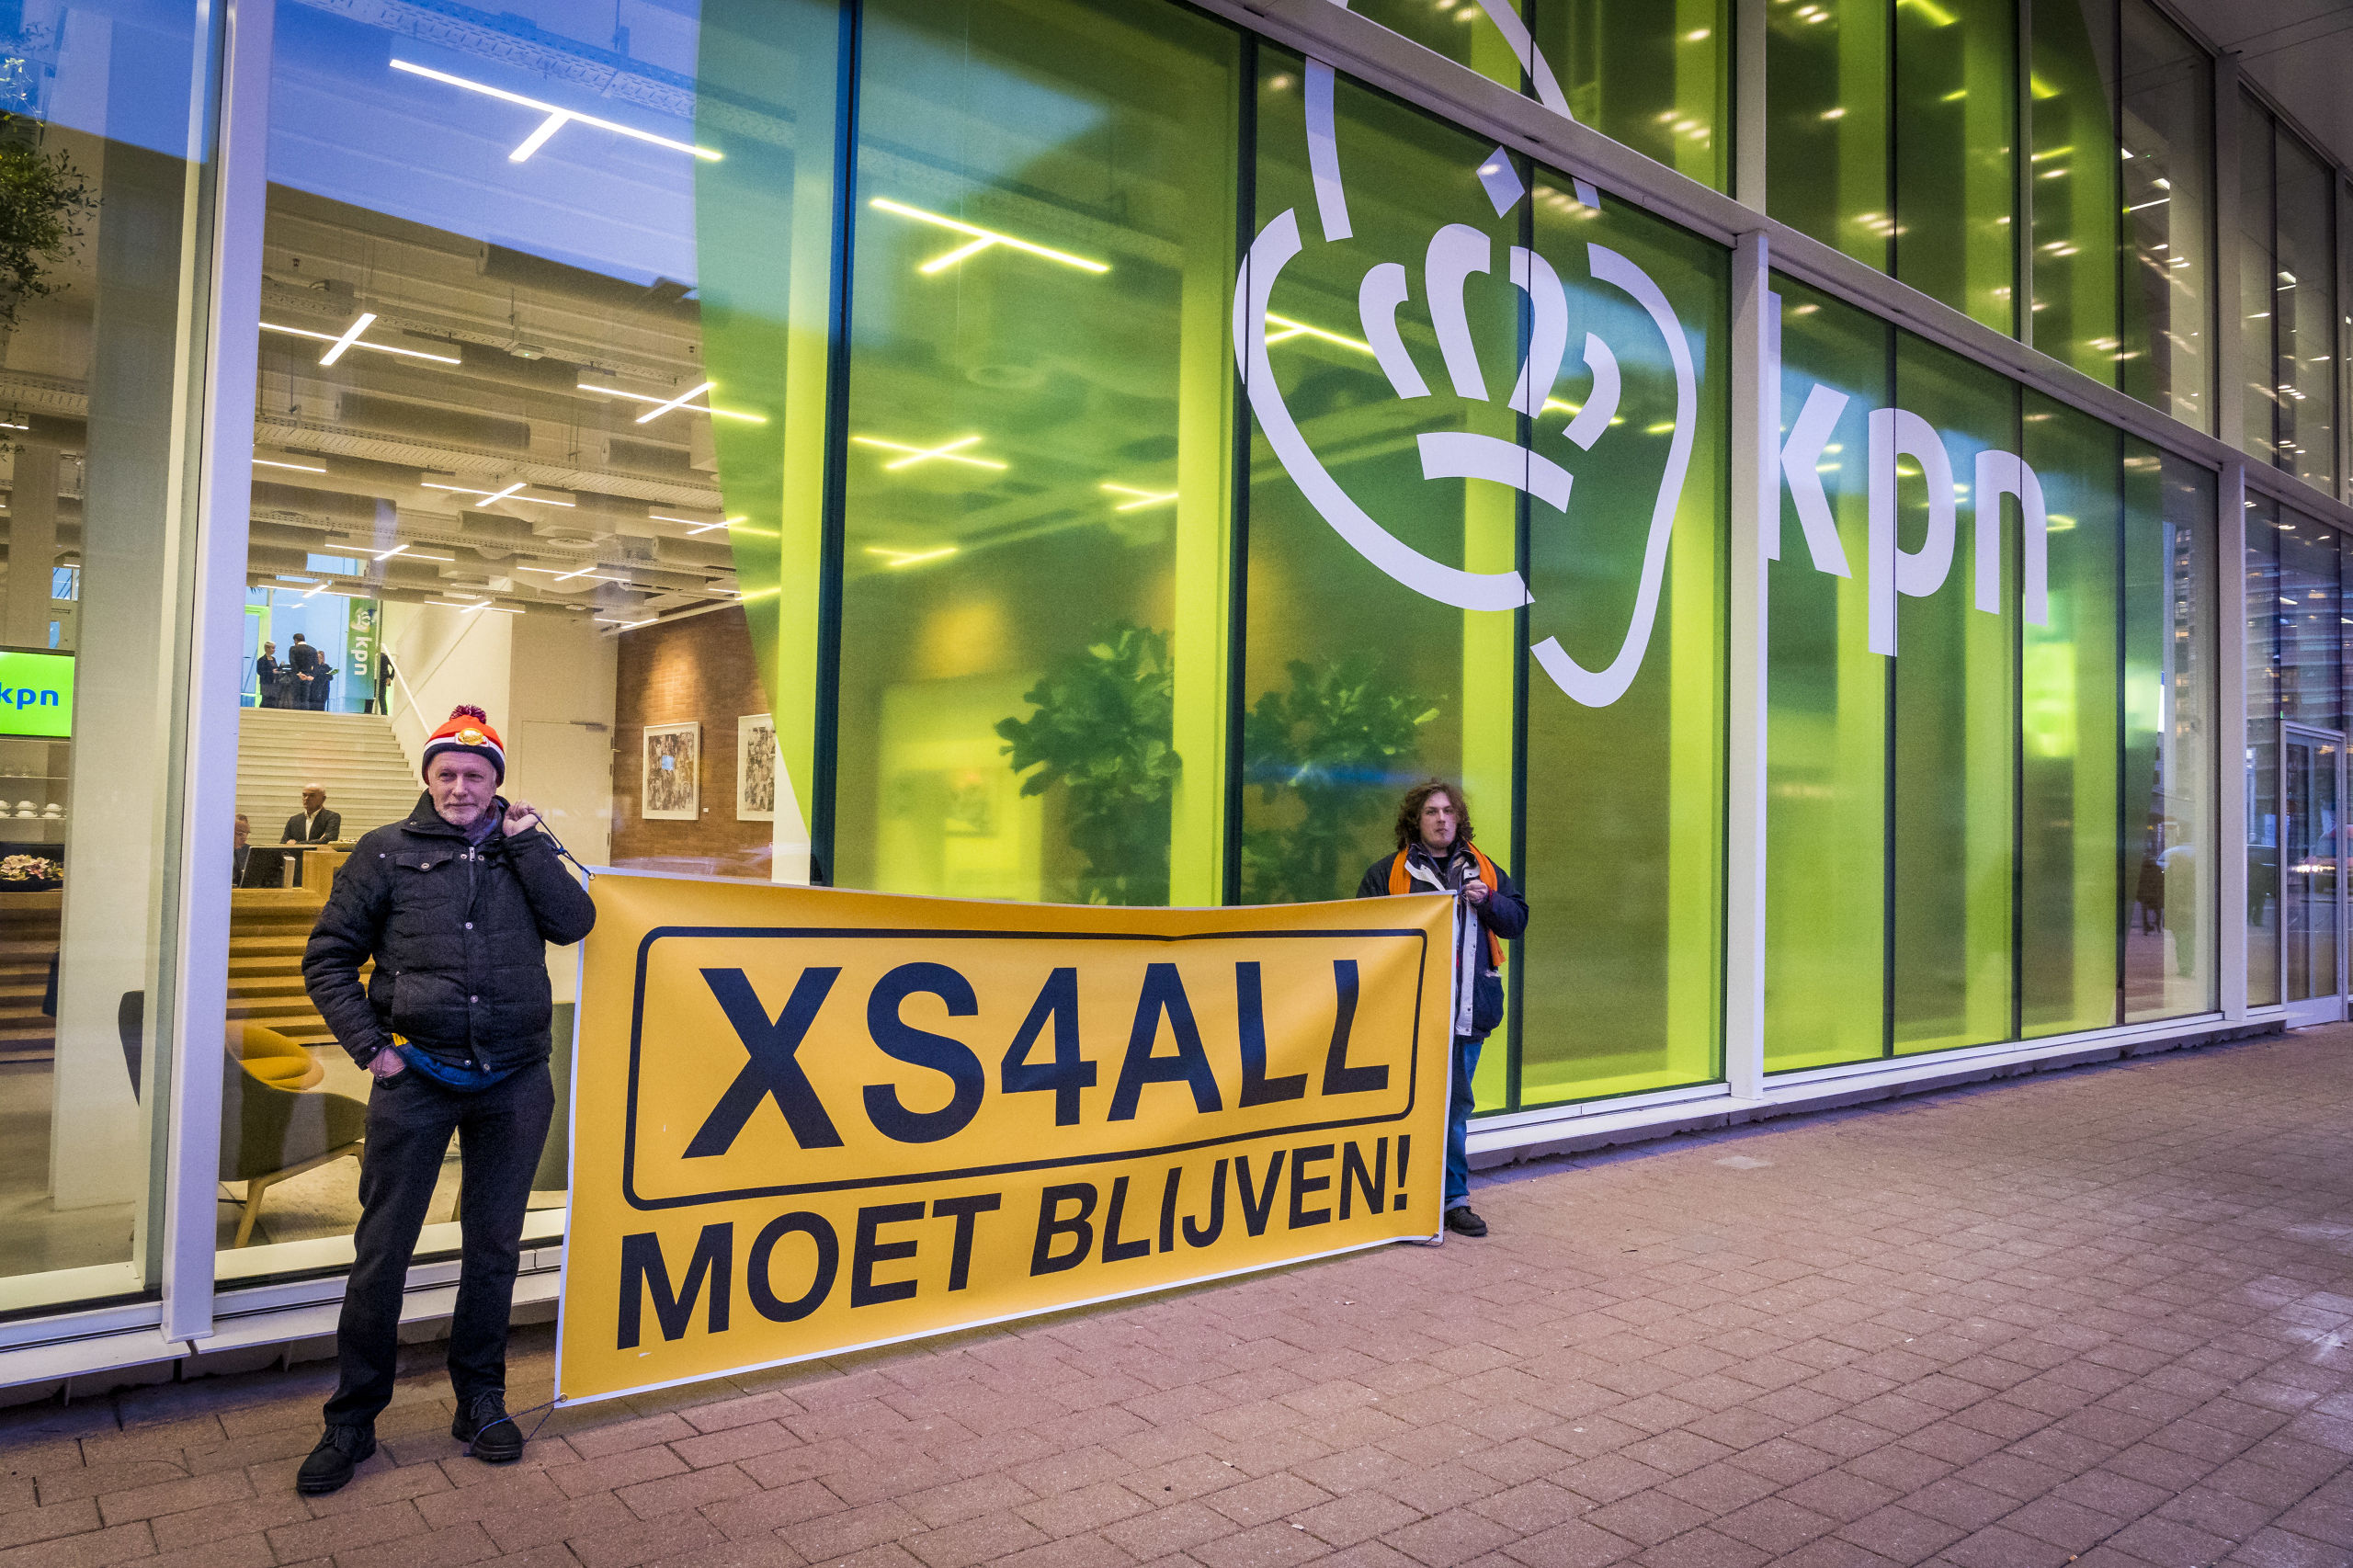 Voor de ingang van het hoofdkantoor van KPN wordt gedemonstreerd door actievoerders van XS4ALL moet blijven. Eigenaar KPN maakte in januari bekend dat merknaam XS4ALL verdwijnt.